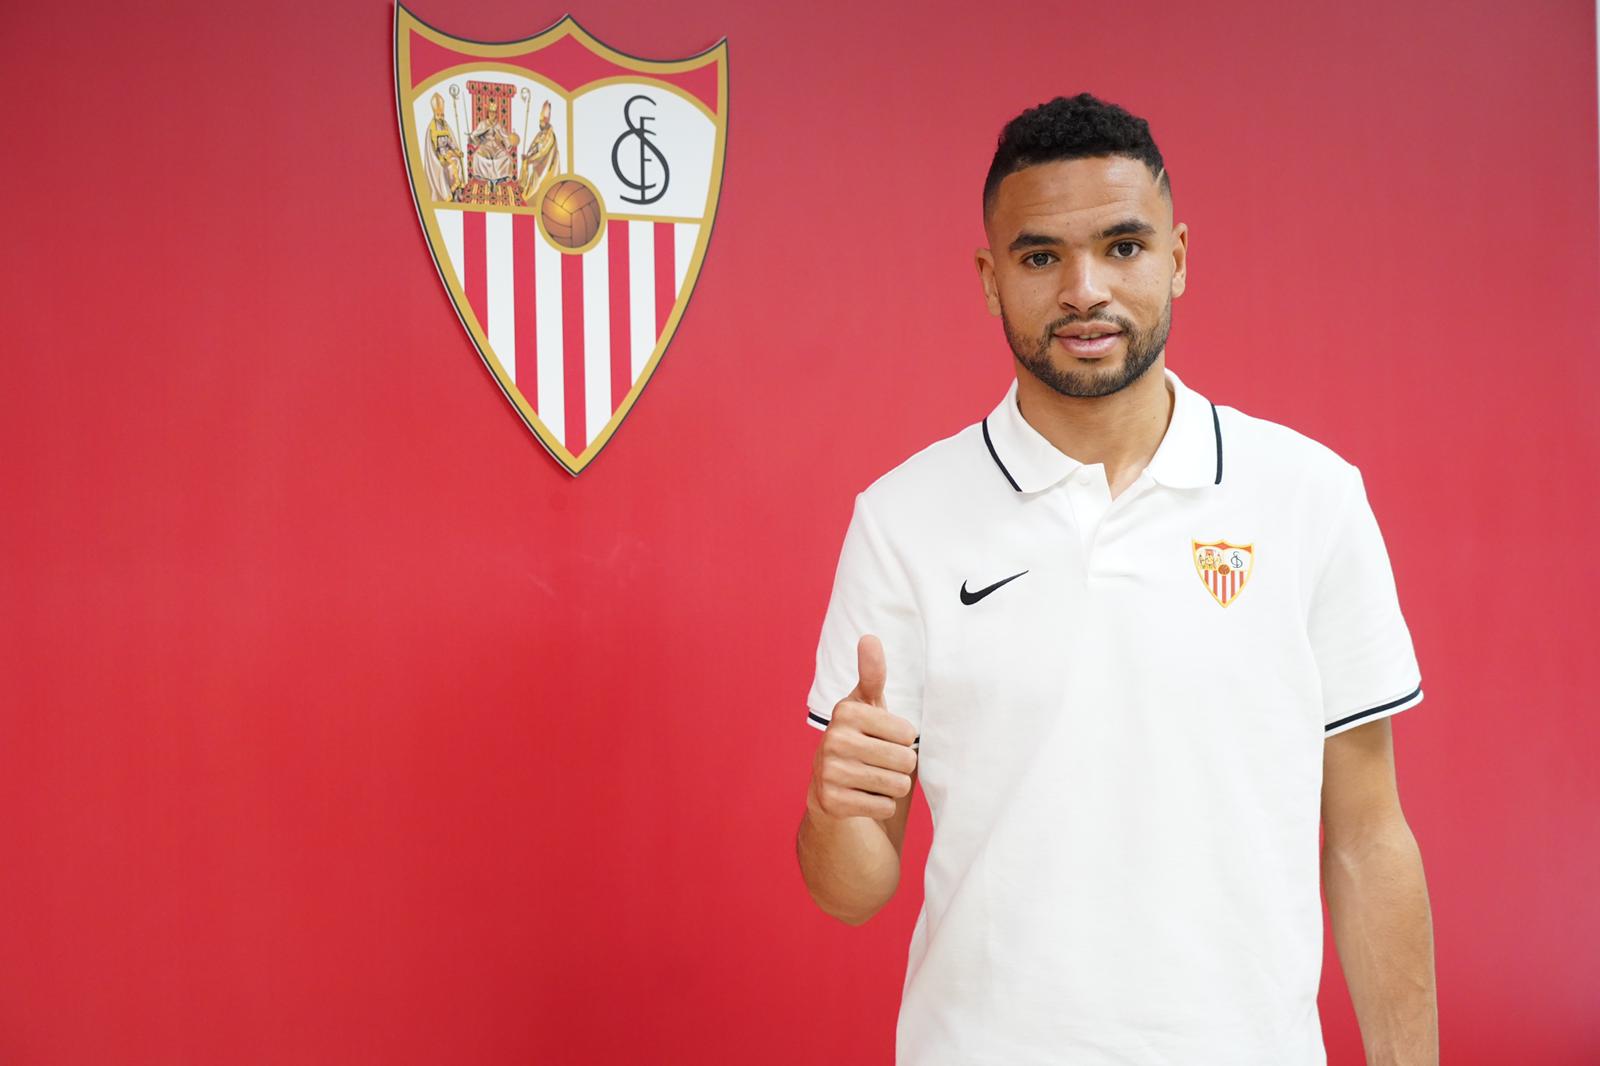 En-Nesyri, nuevo jugador del Sevilla FC